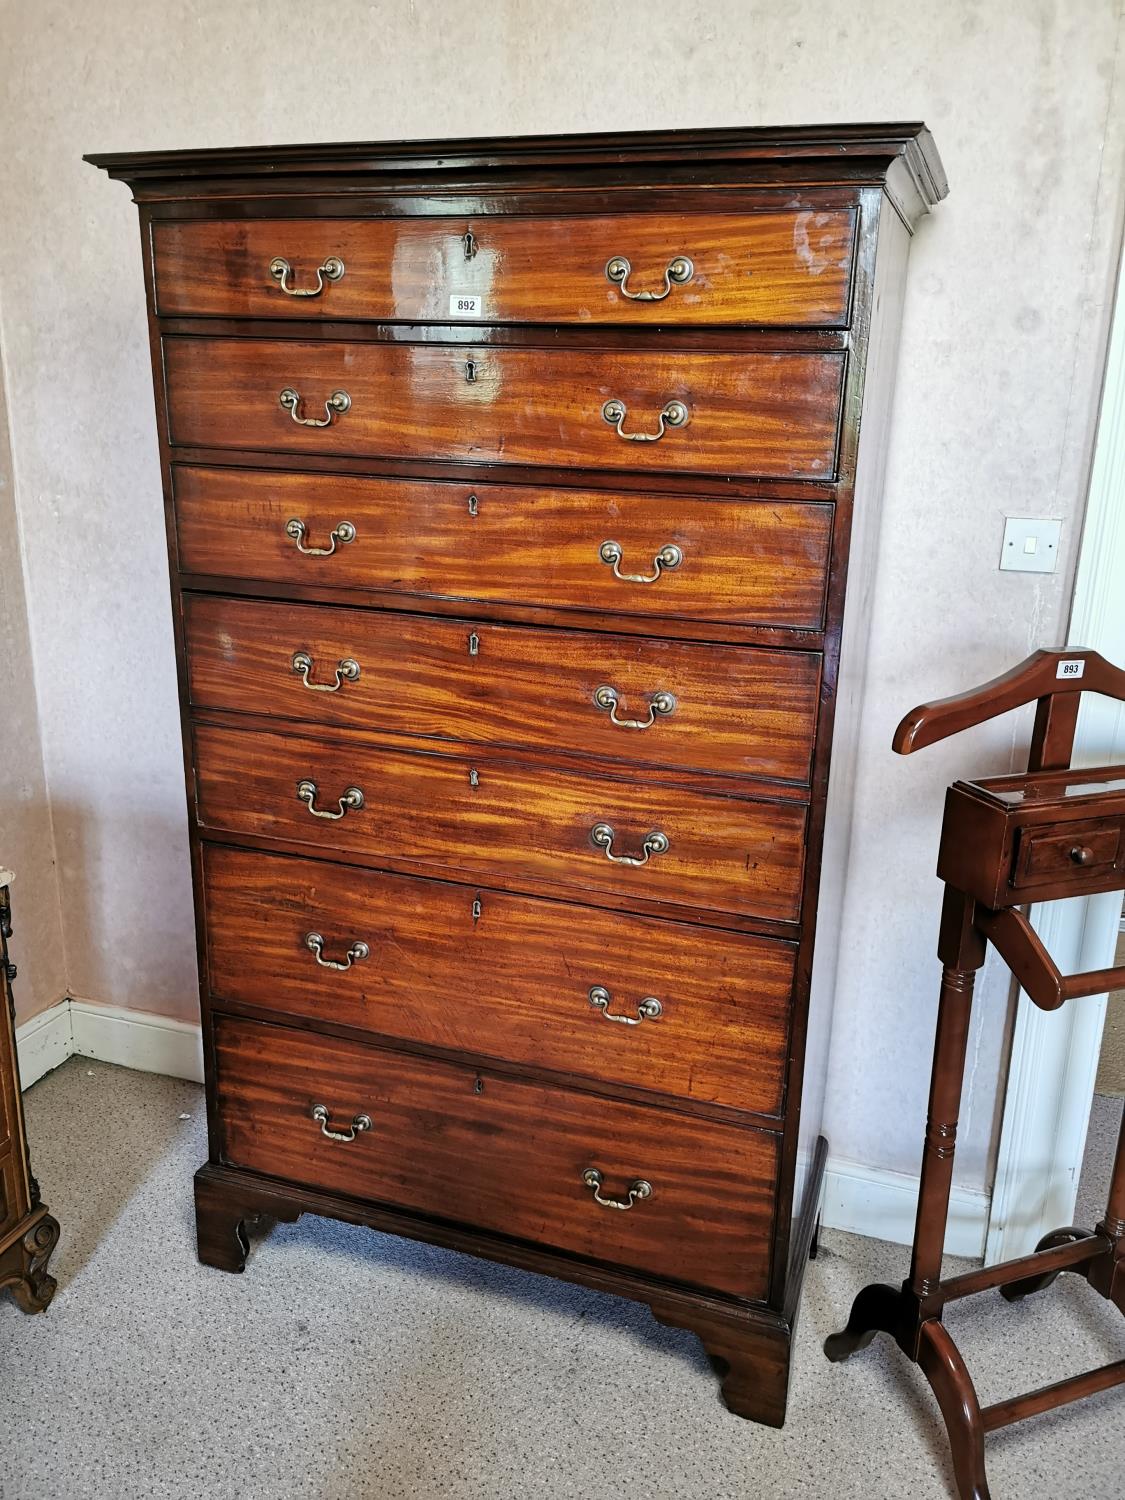 Irish Georgian mahogany chest of drawers.